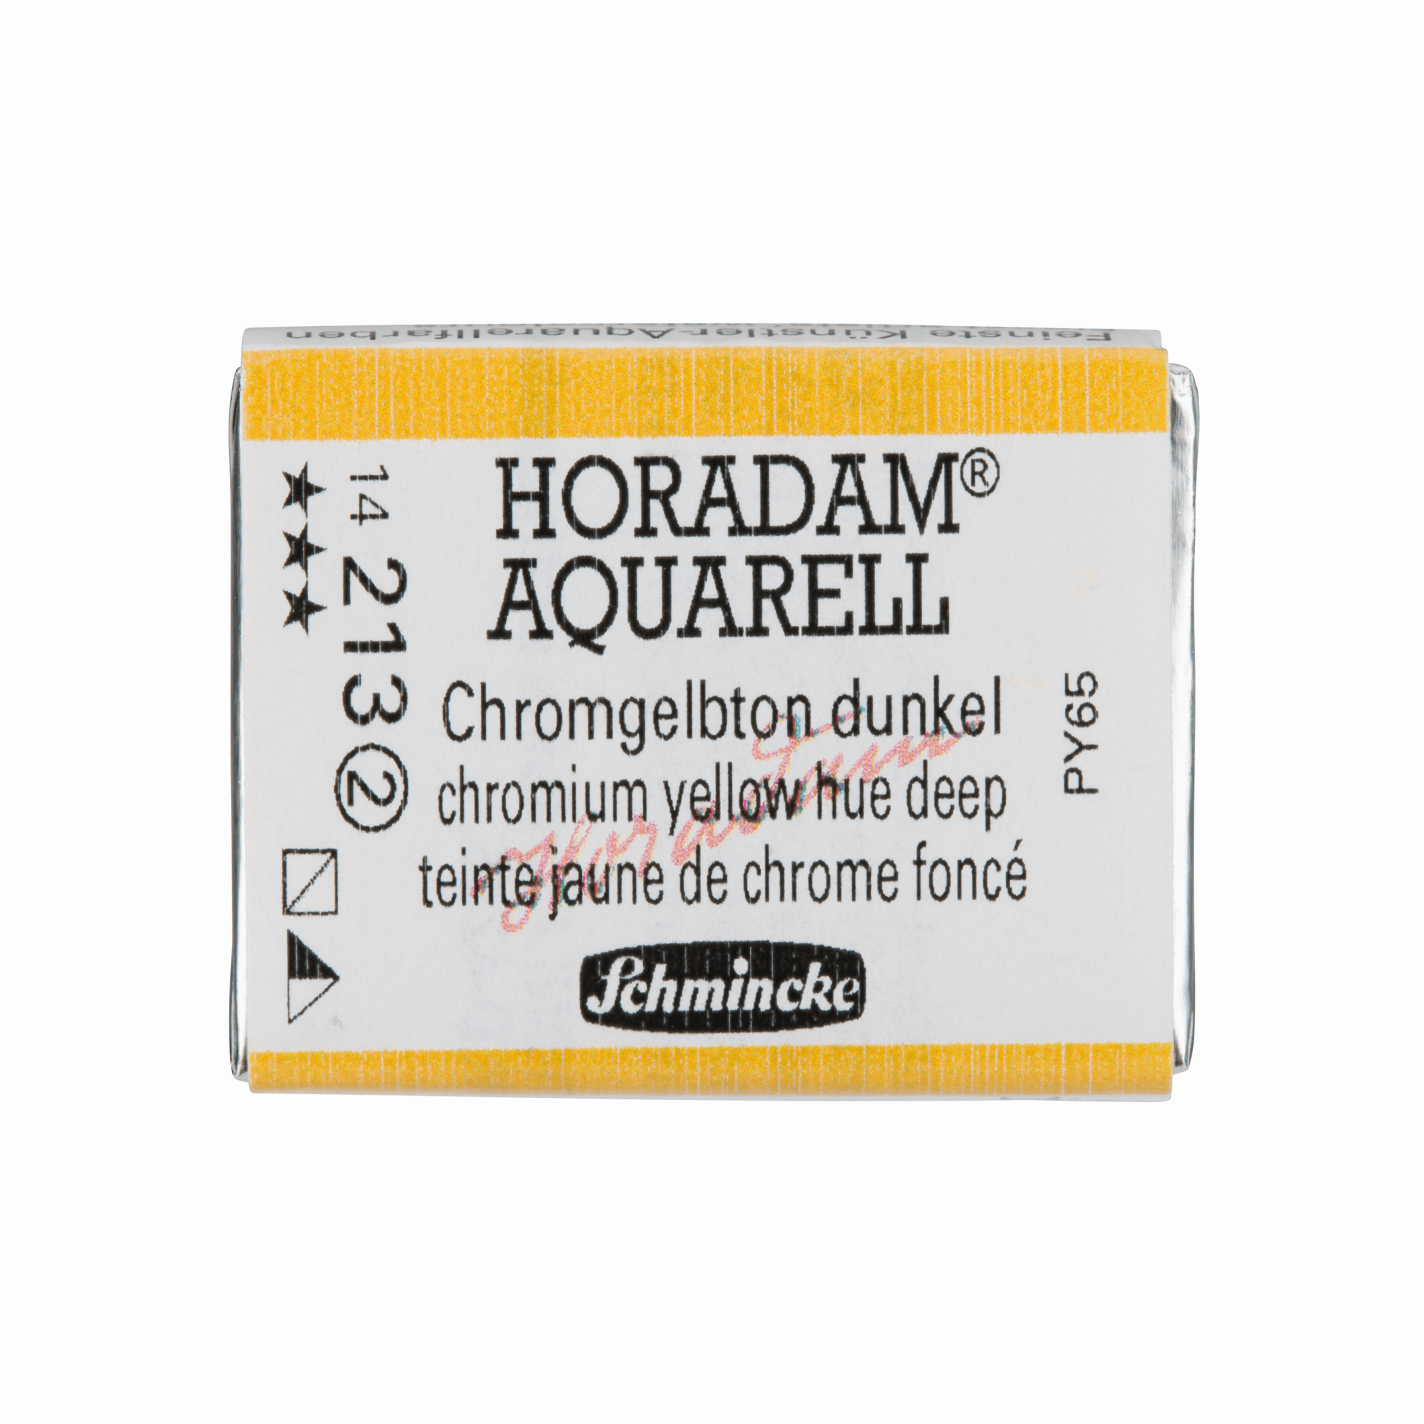 Schmincke Horadam Aquarell pans 1/1 pan Yellow Hue Deep